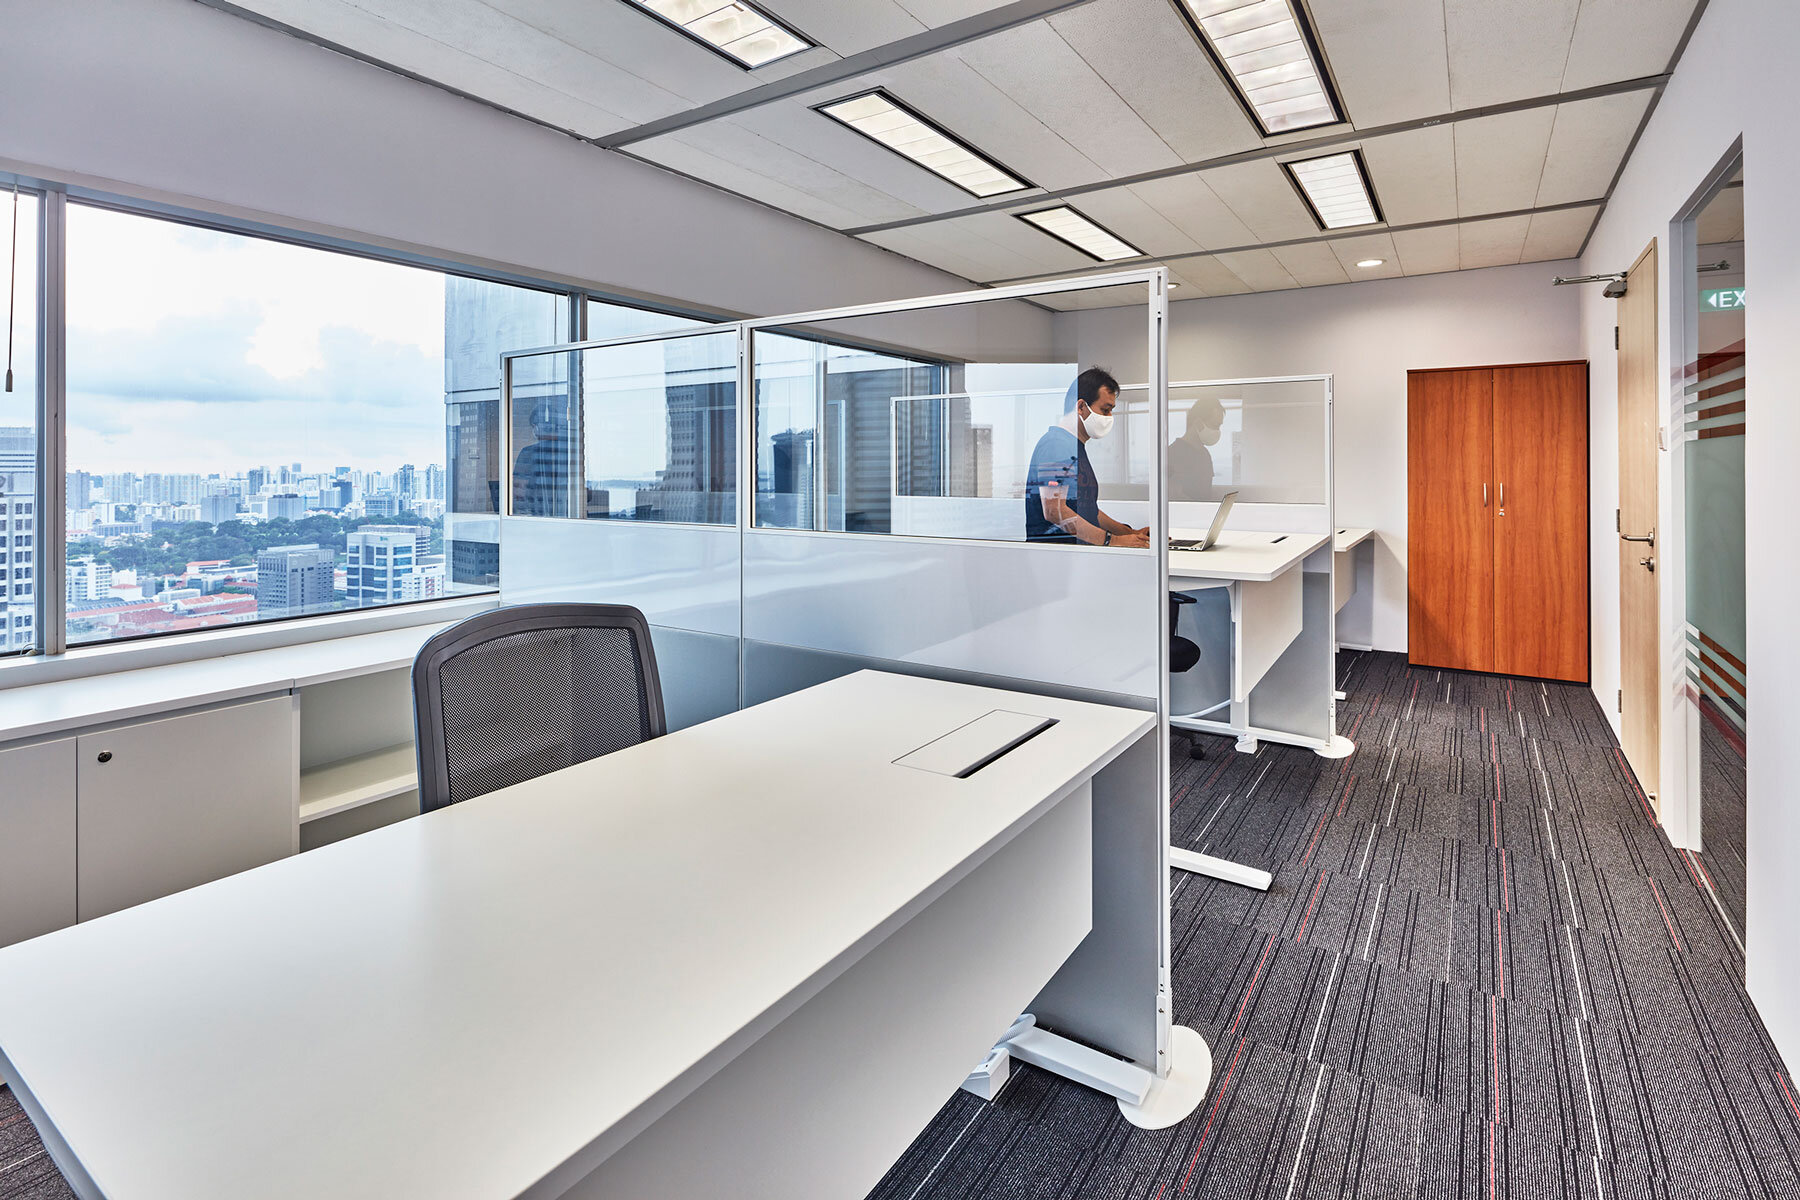  大面积透明隔板在可调节办公桌之间形成实体间隔，亦为员工带来更强的私人空间感。 